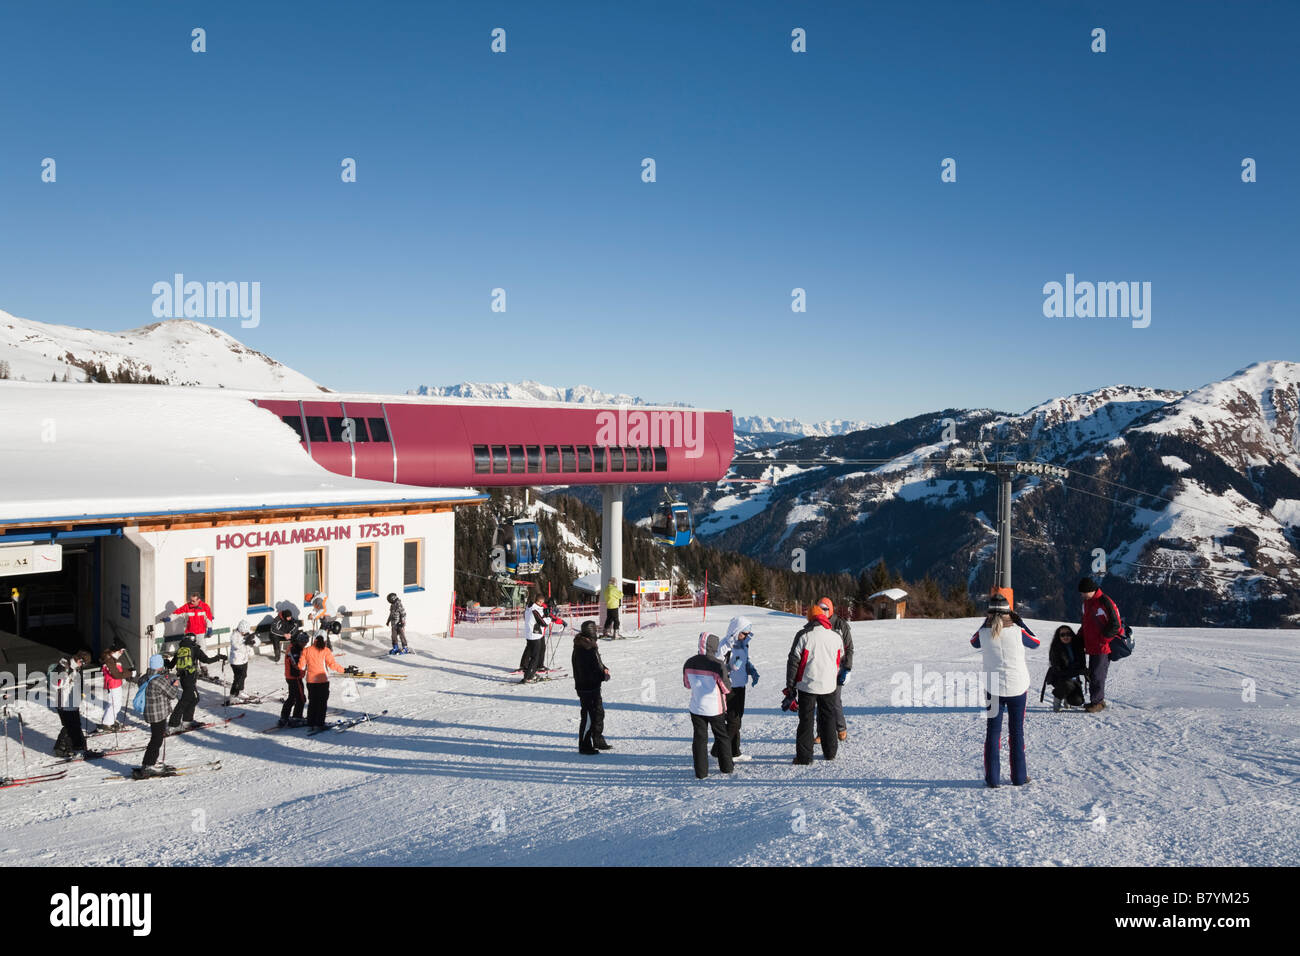 Les skieurs et randonneurs sur piste en pente de neige dans la station de télécabine de Hochalmbahn Nationalpark Hohe Tauern dans Alpes autrichiennes. Rauris Autriche Banque D'Images